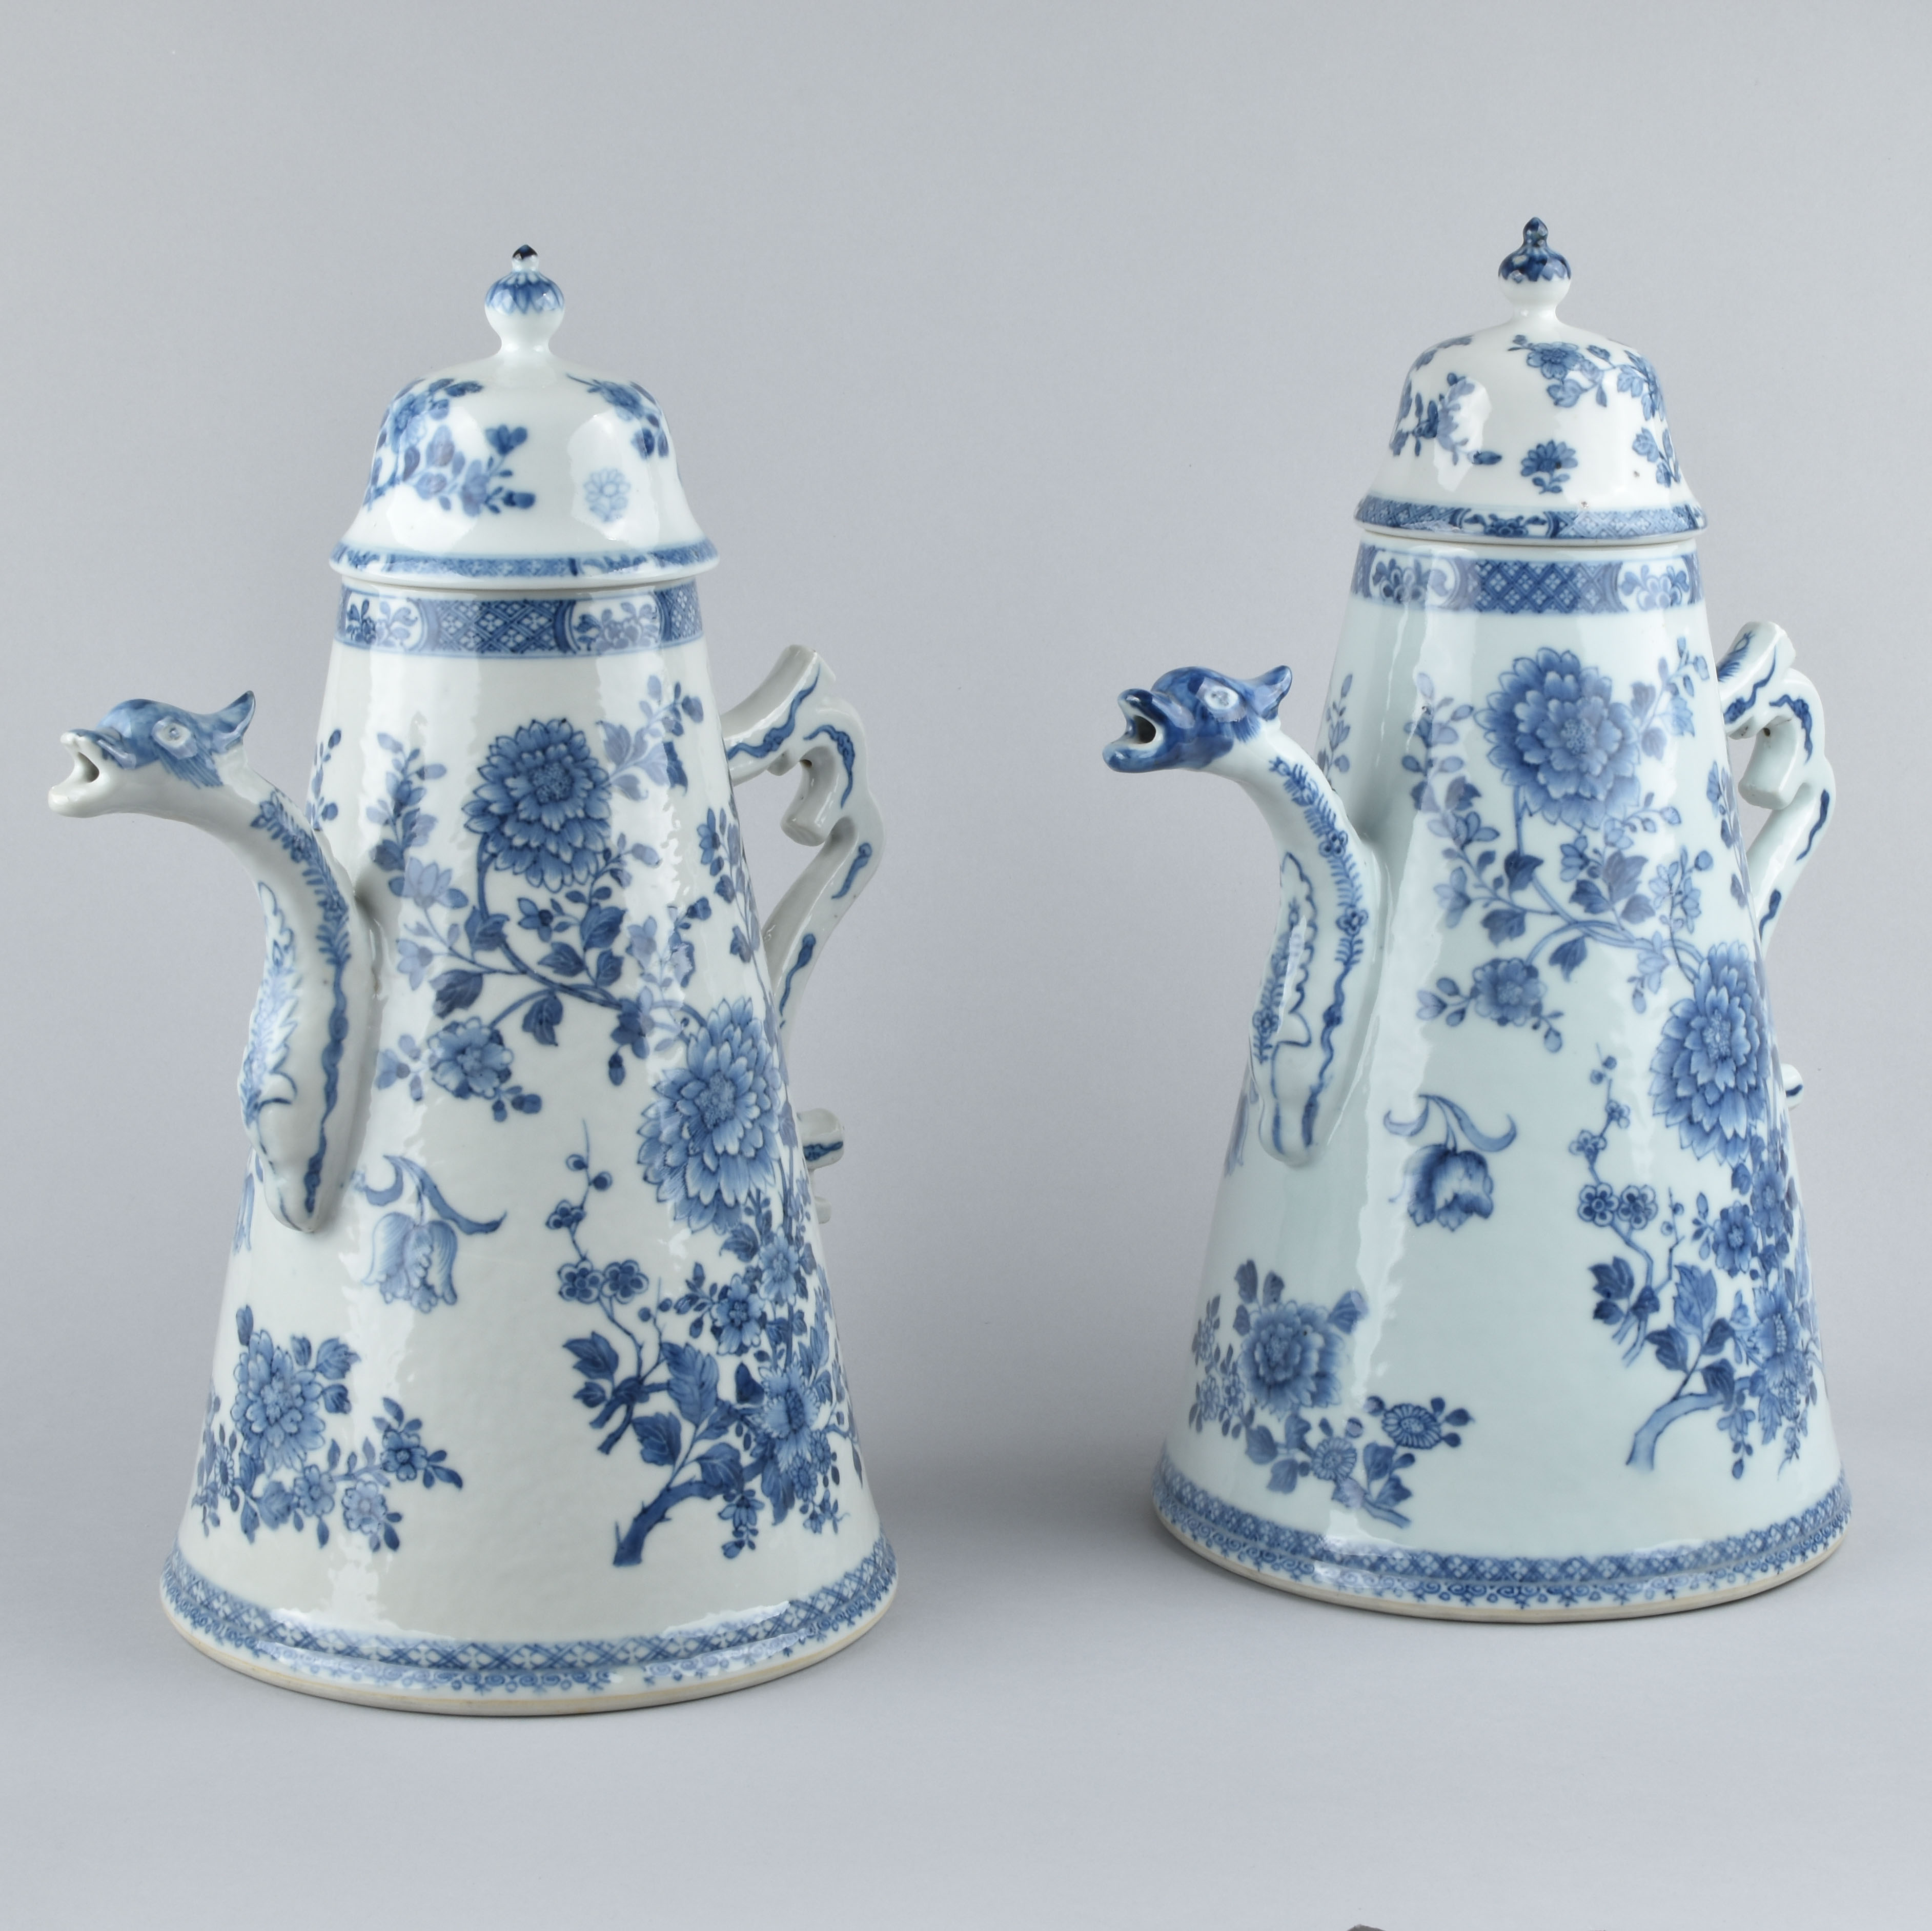 Porcelain Époque Qianlong (1736-1795), vers 1730-1740 , China